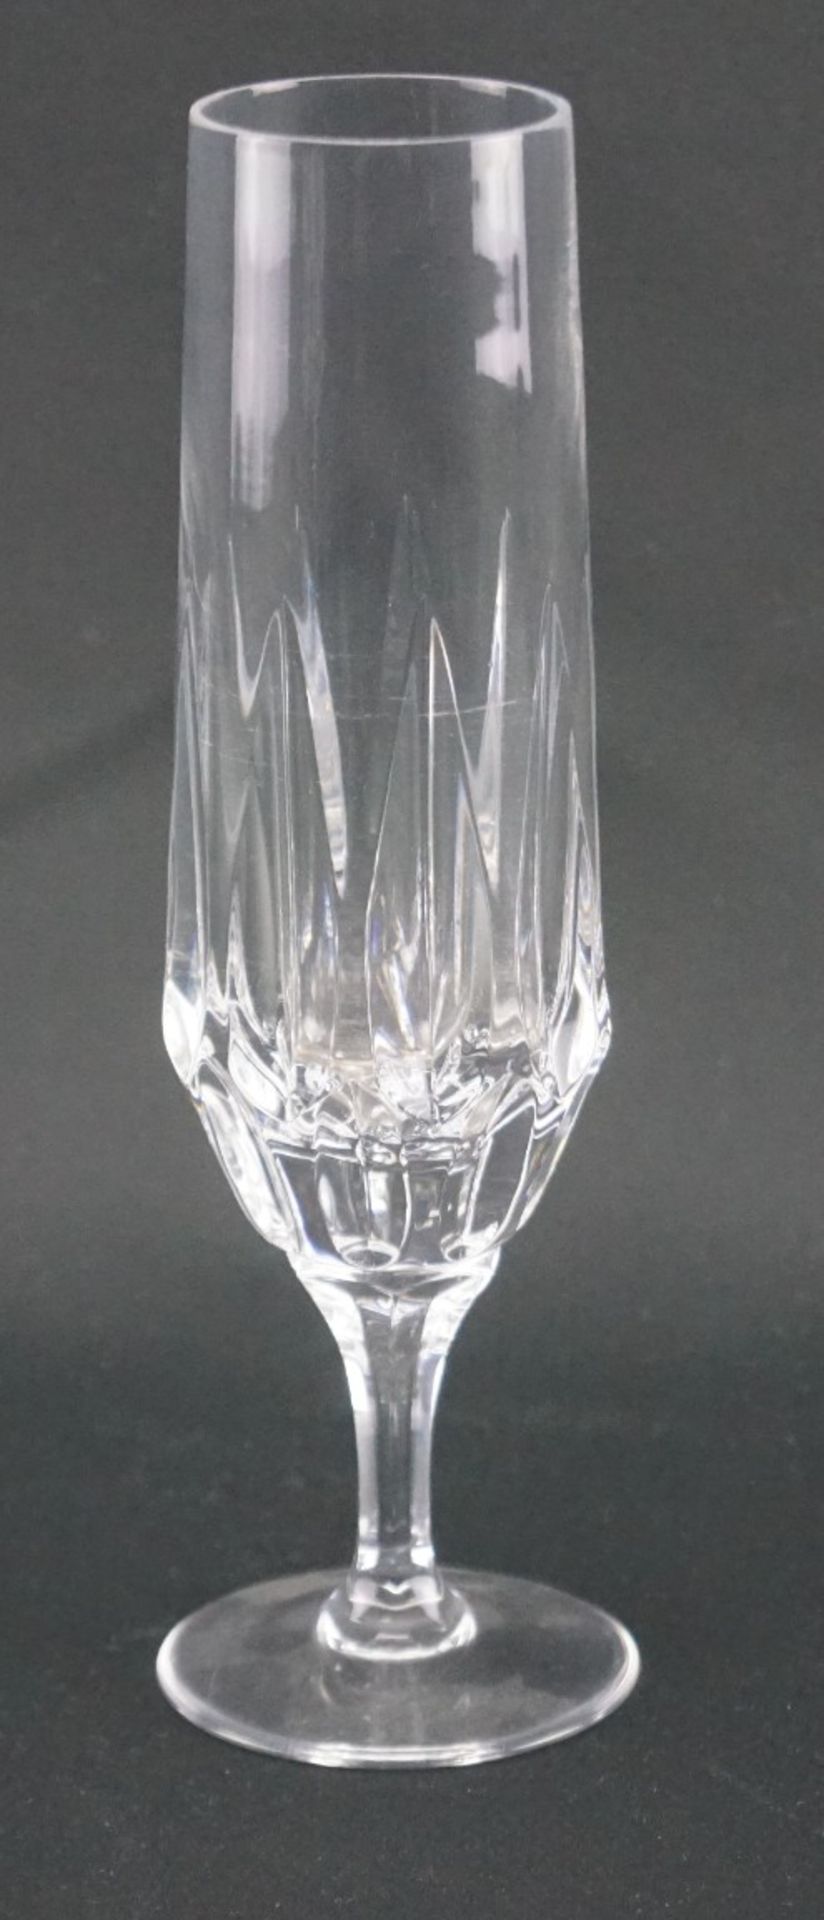 Sechs Sektflöten aus KristallglasKristallglas, Höhe der Gläser 19 cm und Durchmesser 4 cm, in - Bild 2 aus 2